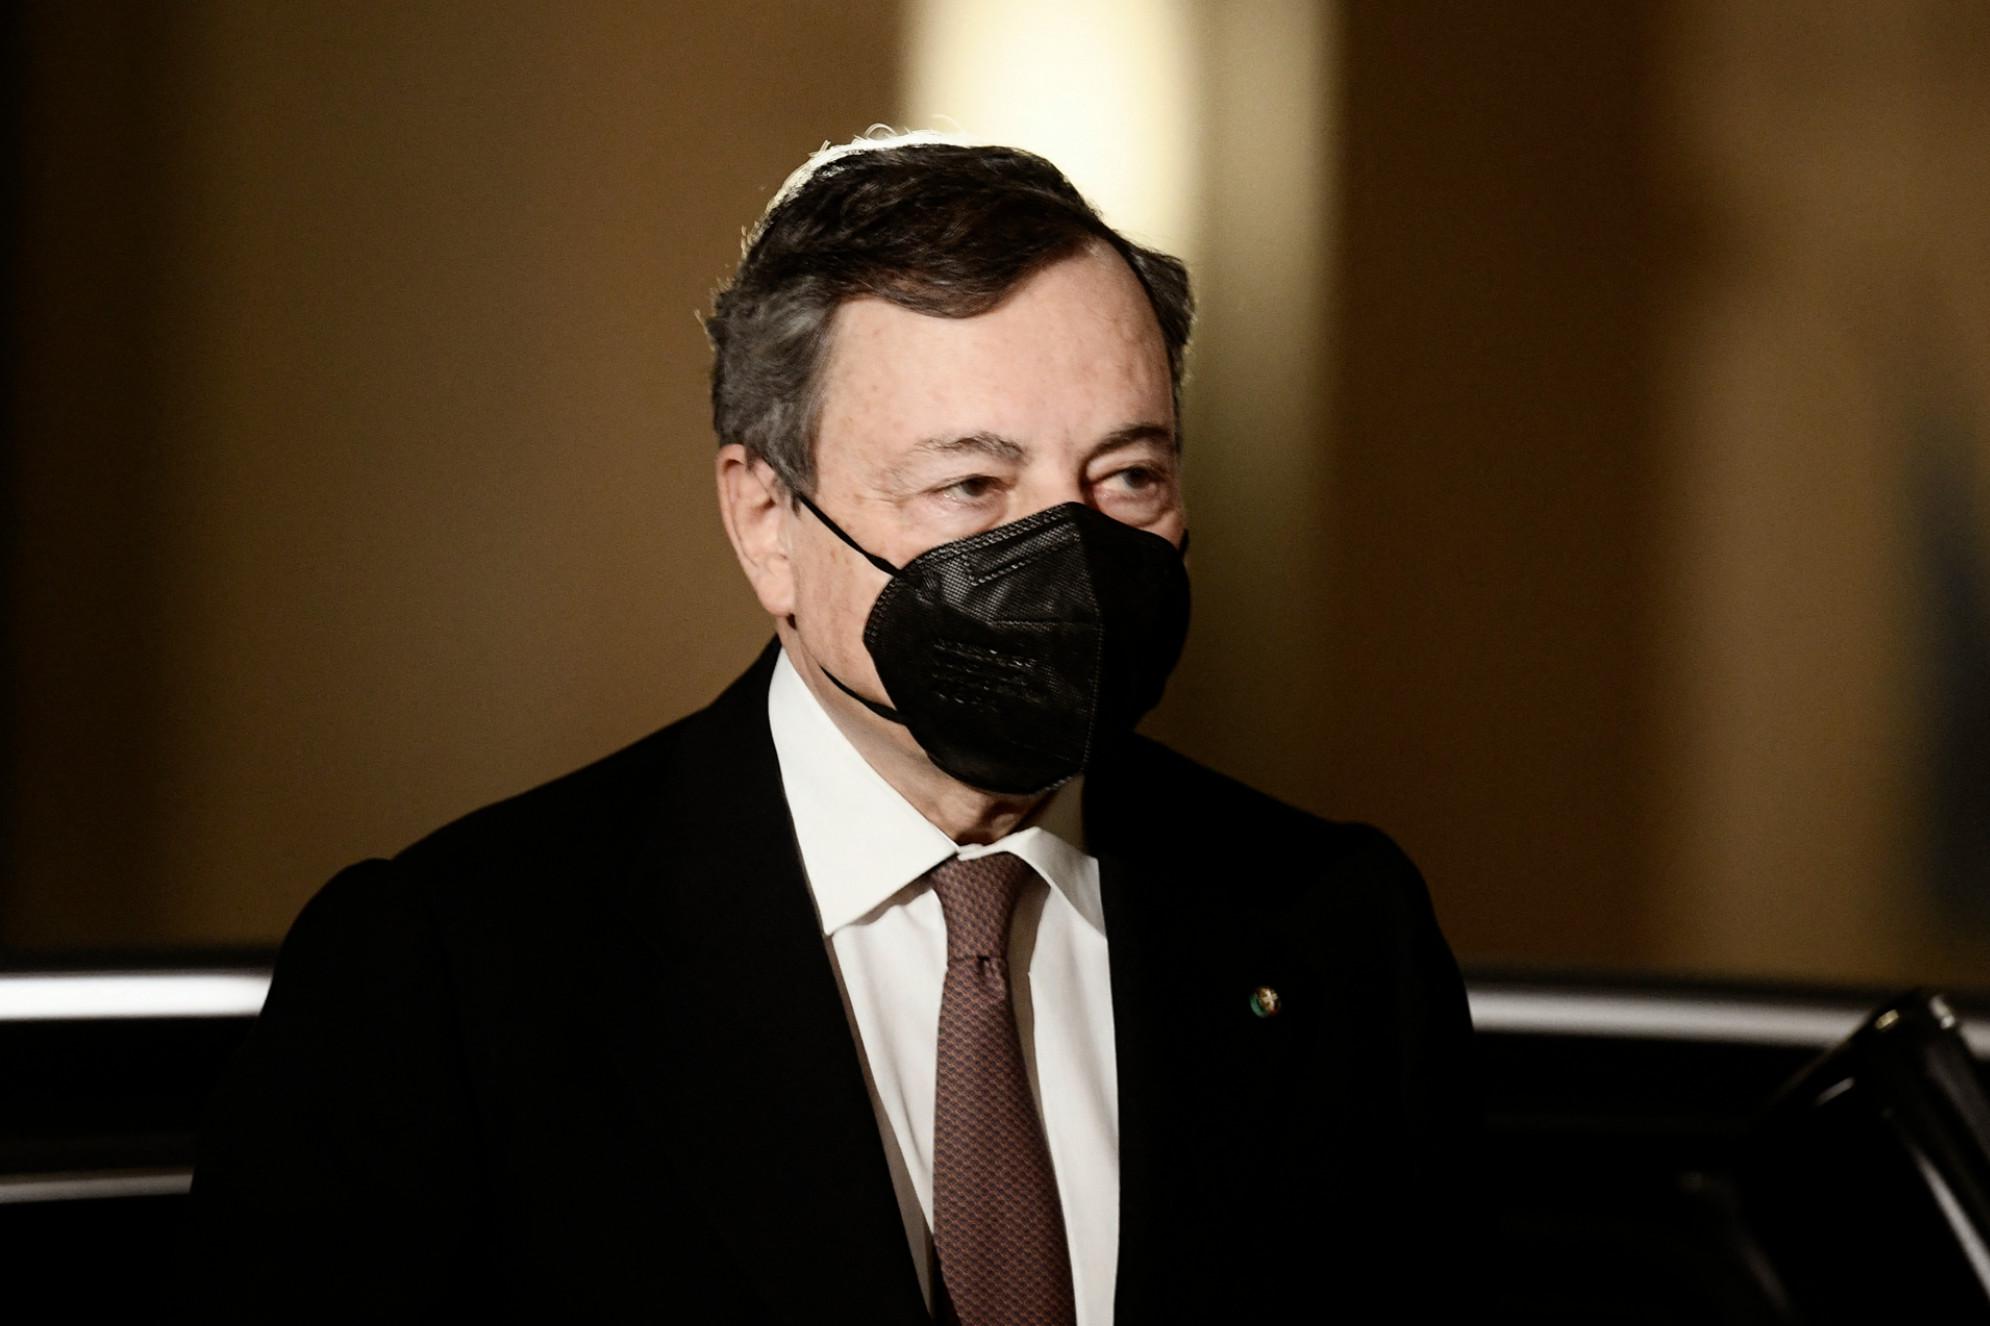 Ambasciatore e carabiniere uccisi, Draghi a Ciampino per rientro salme